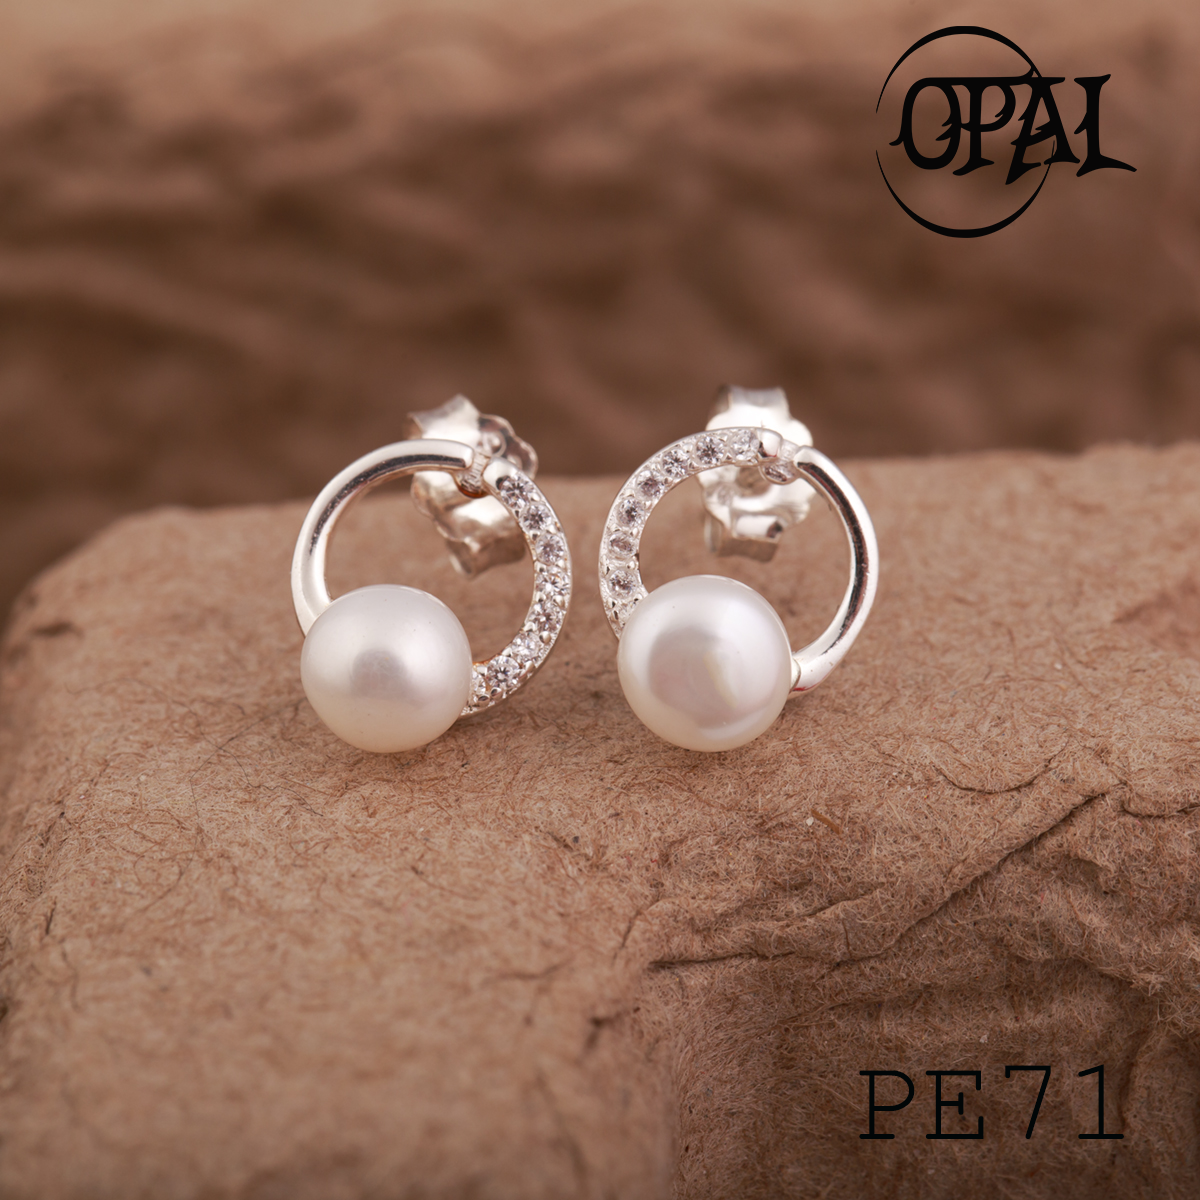  PE71 - Hoa tai bạc đính ngọc trai OPAL 